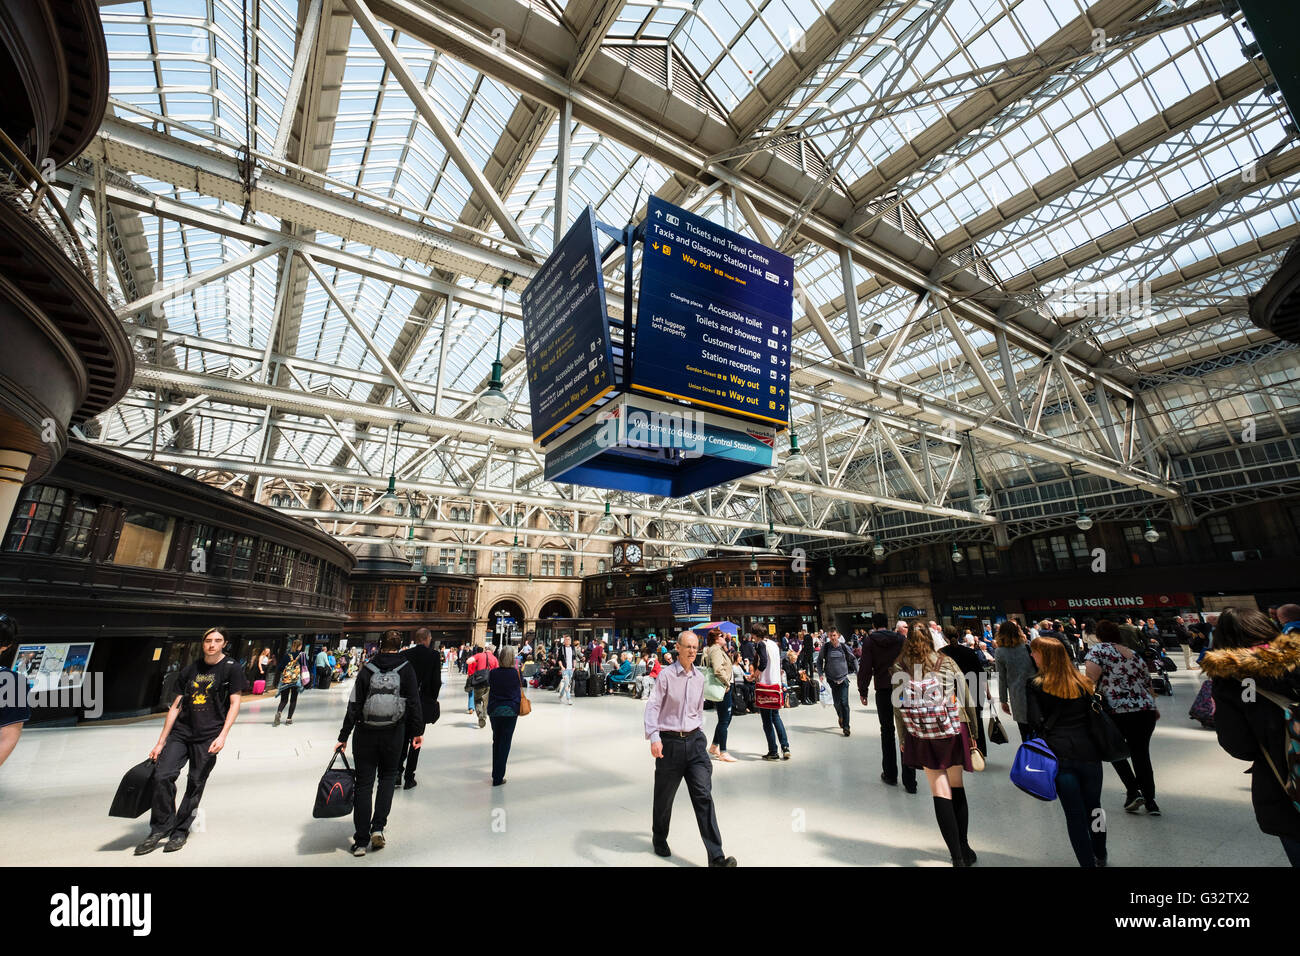 belebten öffentlichen Halle an Glasgow Central Station in Glasgow, Vereinigtes Königreich Stockfoto